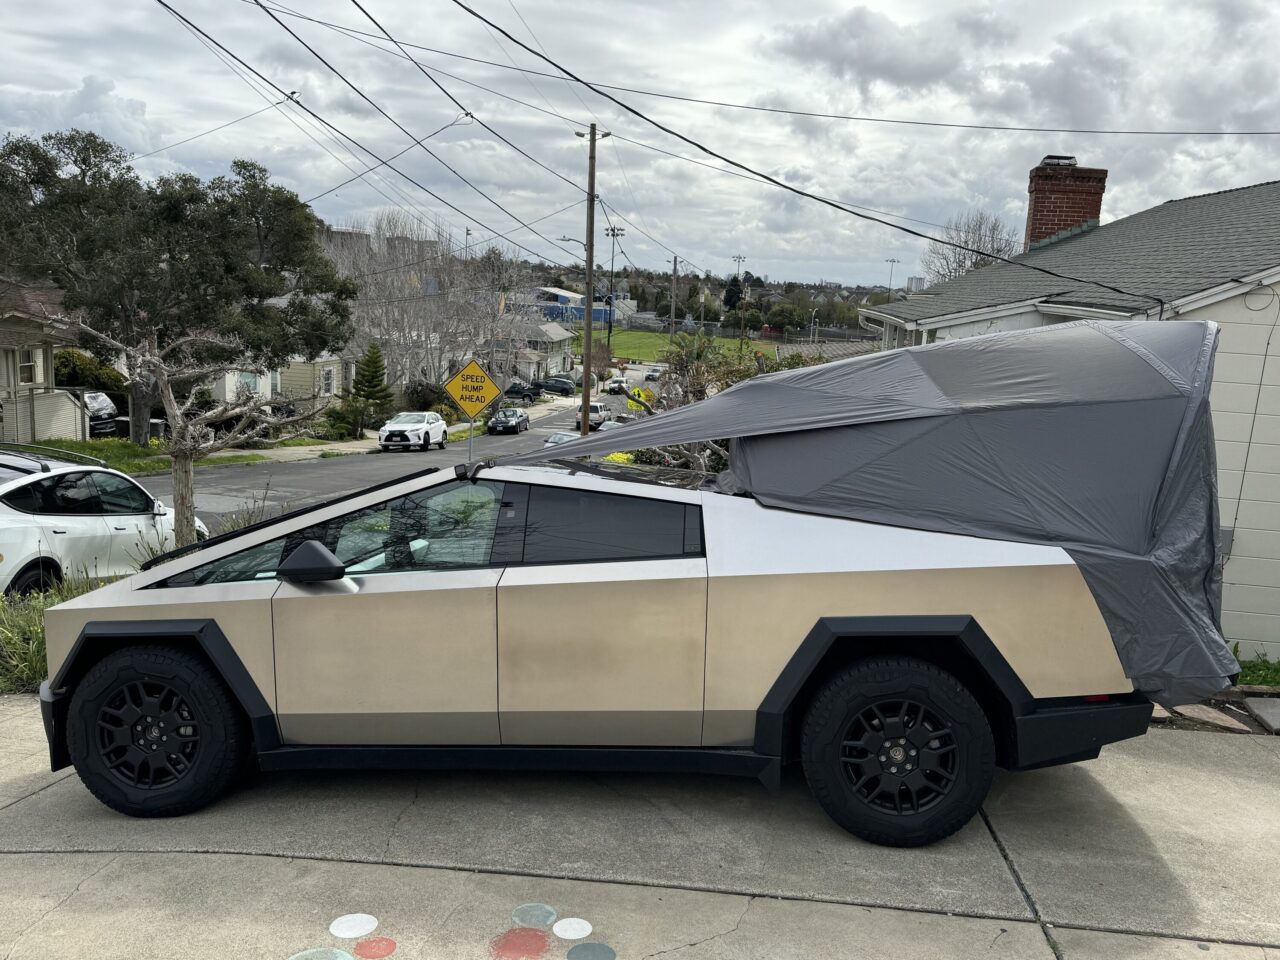 Namiot Tesla Basecamp. Samochód o wyraźnym, kanciastym kształcie z osłoną na tylnej części zaparkowany przy ulicy na przedmieściach; tło z domami i roślinnością.